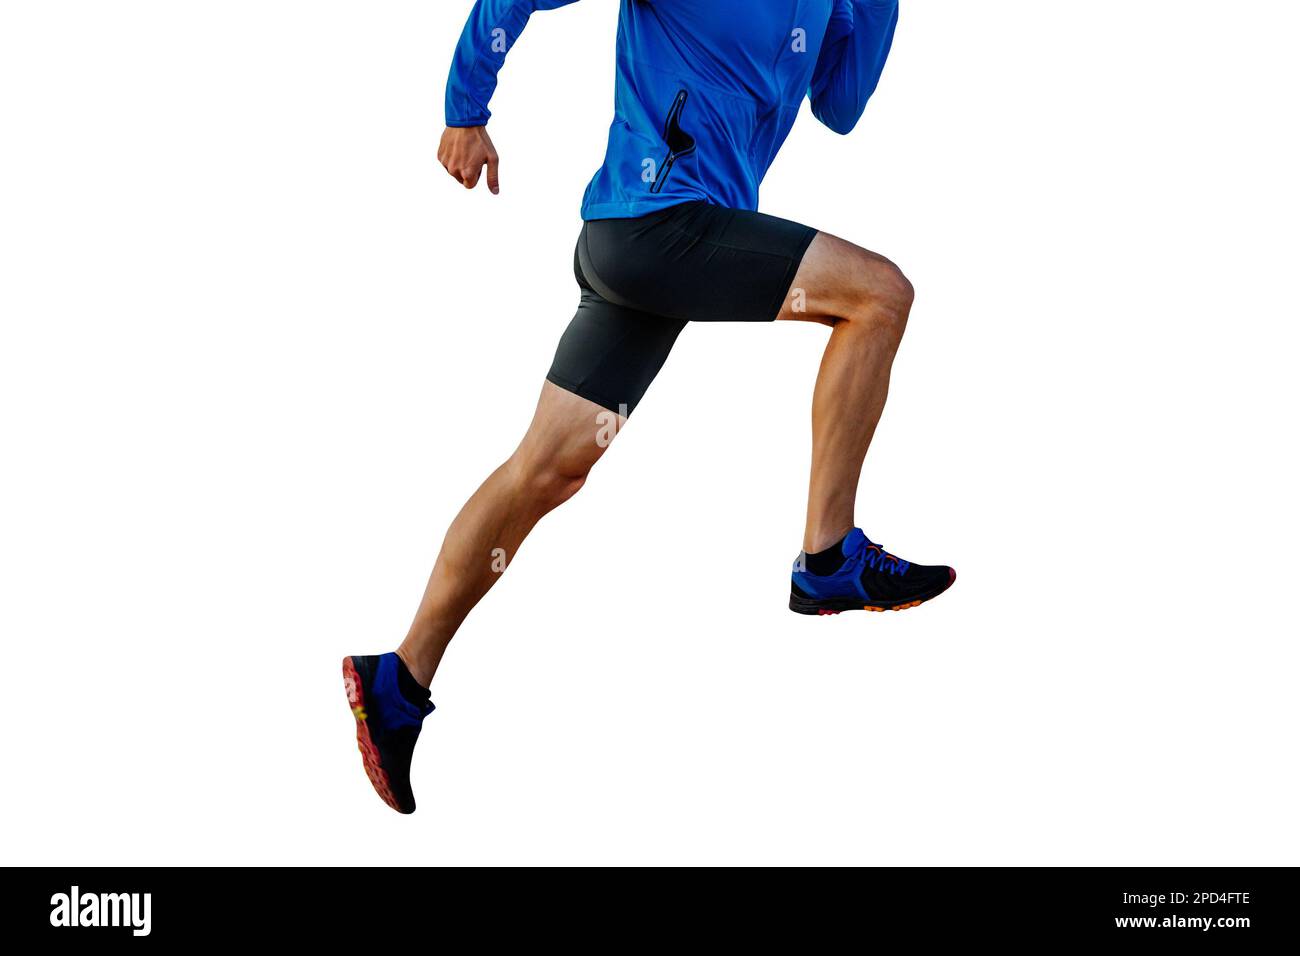 Männlicher Läufer in blauer Windjacke und schwarzen Strumpfhosen, die bergauf laufen, geschnittene Silhouette auf weißem Hintergrund, Sportfoto Stockfoto